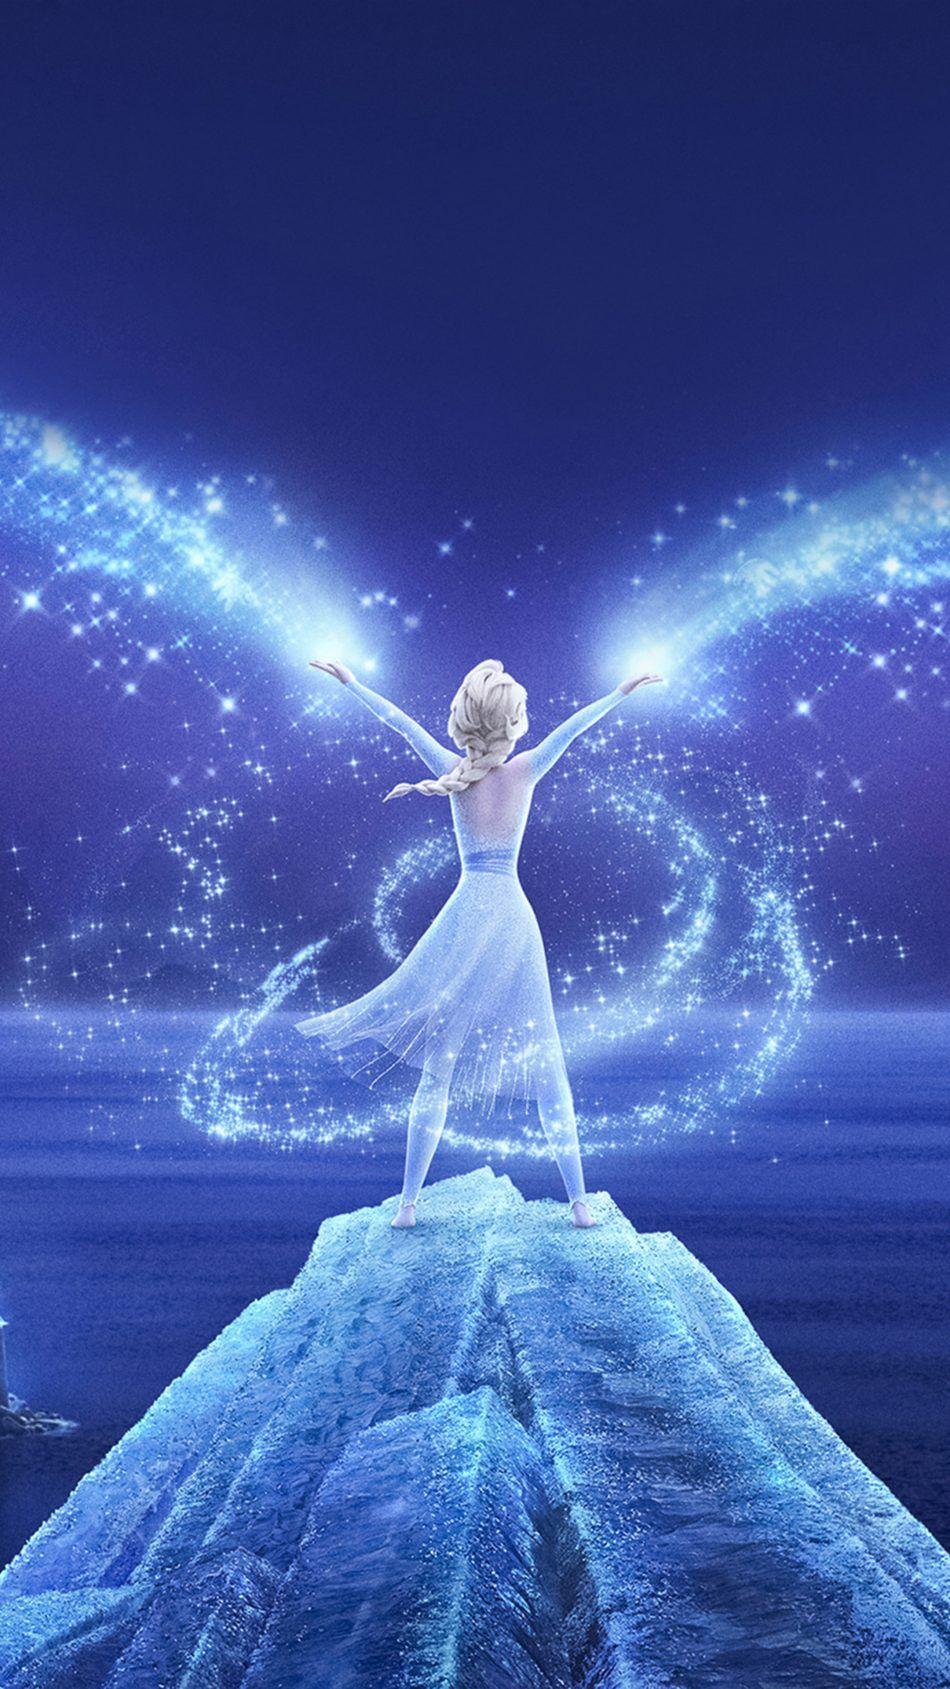 Queen Elsa Frozen 2 2019. Disney princess frozen, Frozen